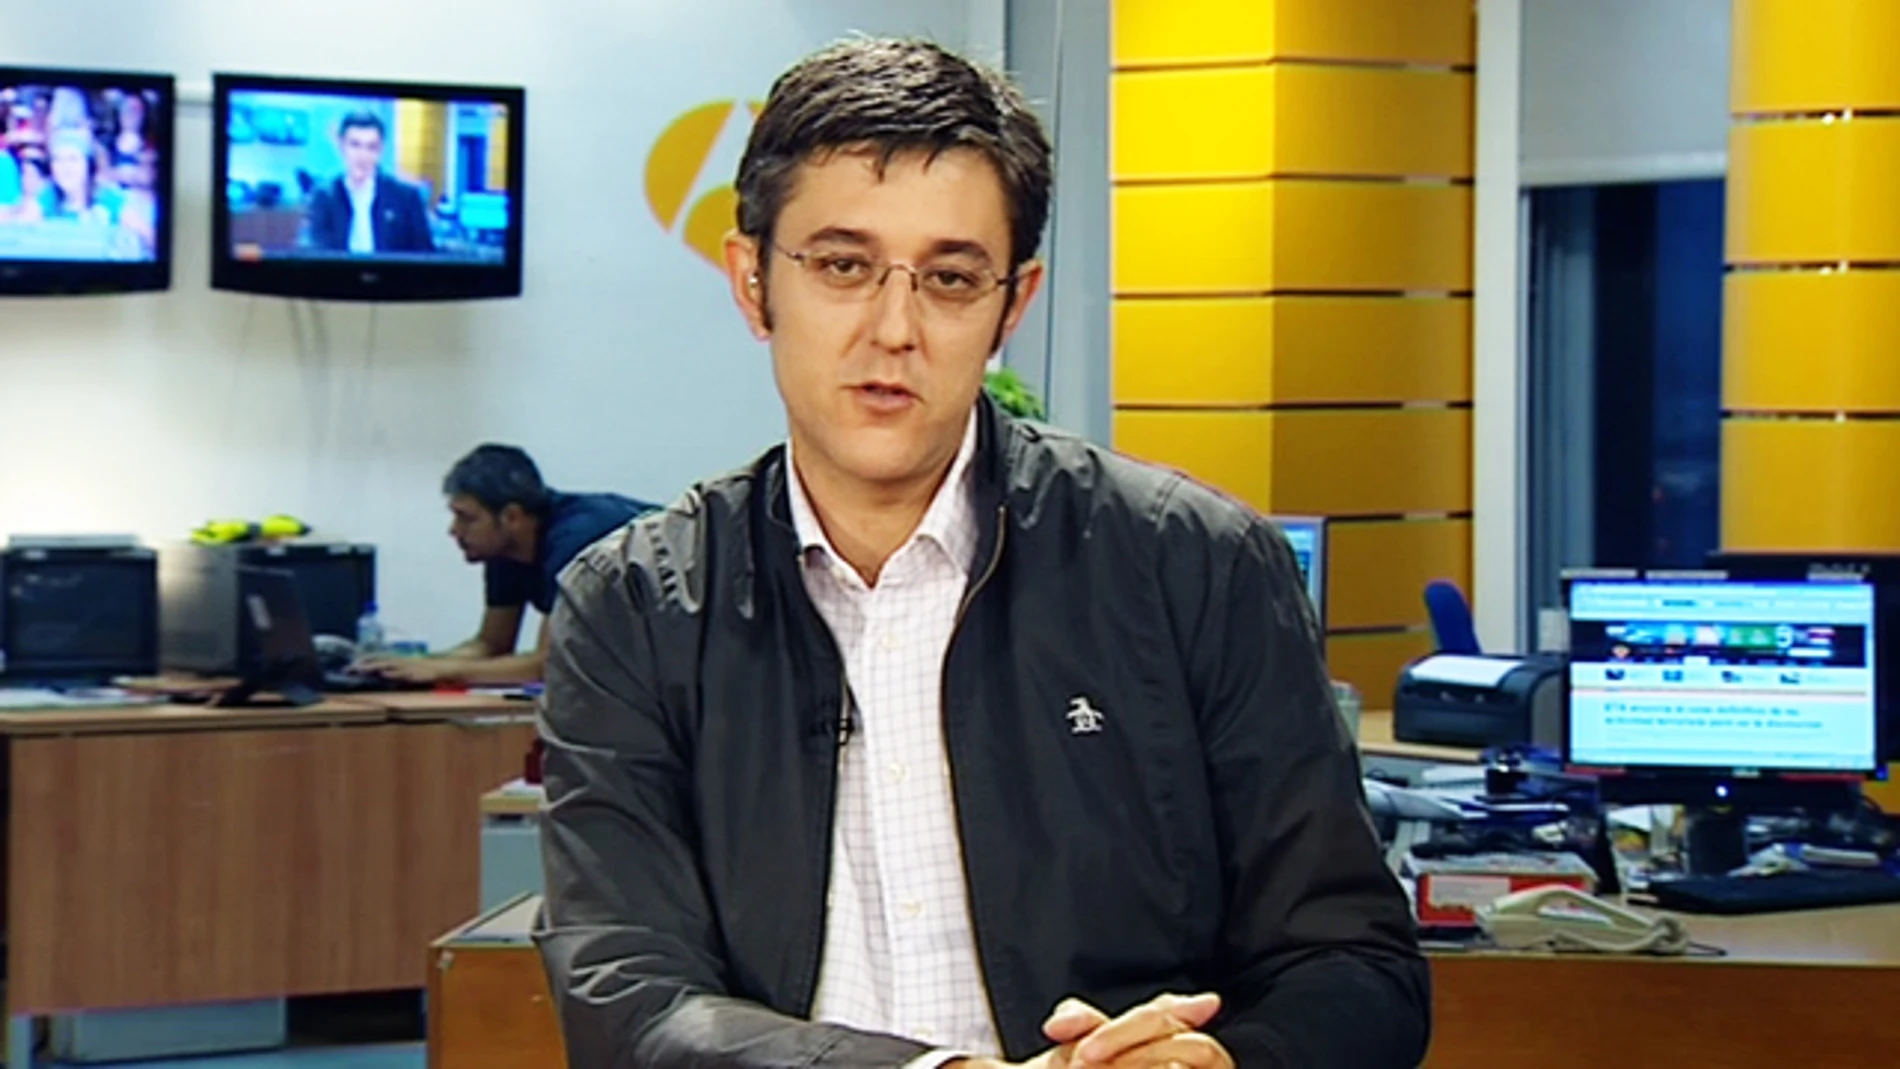 Eduardo Madina en la sede de antena 3 Euskadi